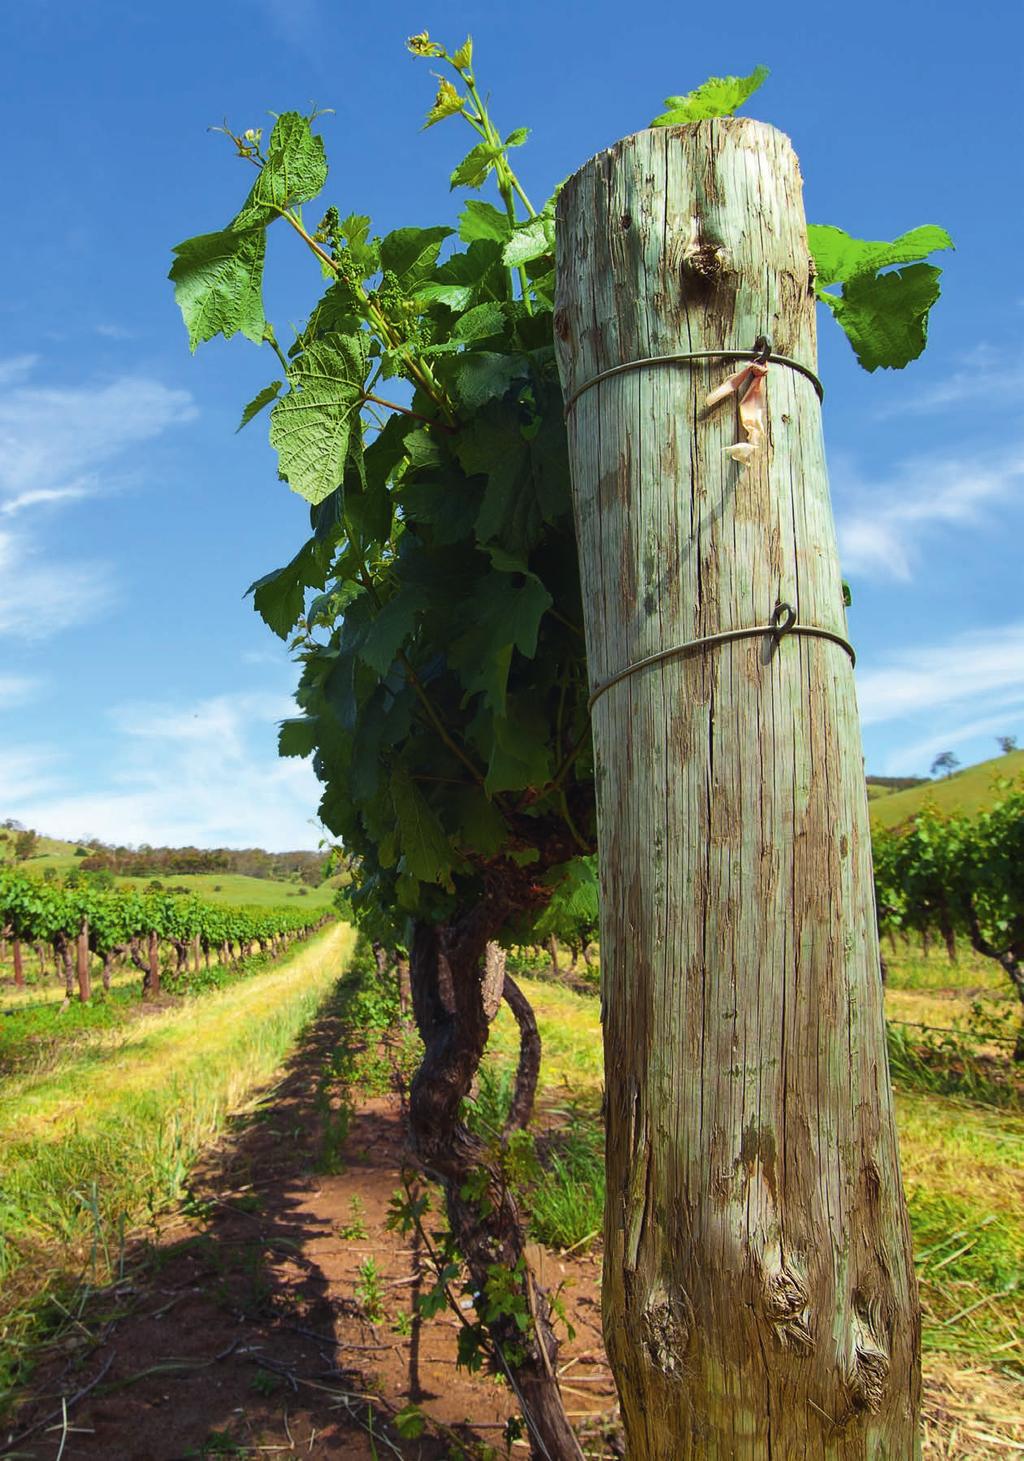 Oogst Australië 2014 In tal van Australische wijngebieden is de oogst 2014 nogal klein uitgevallen.